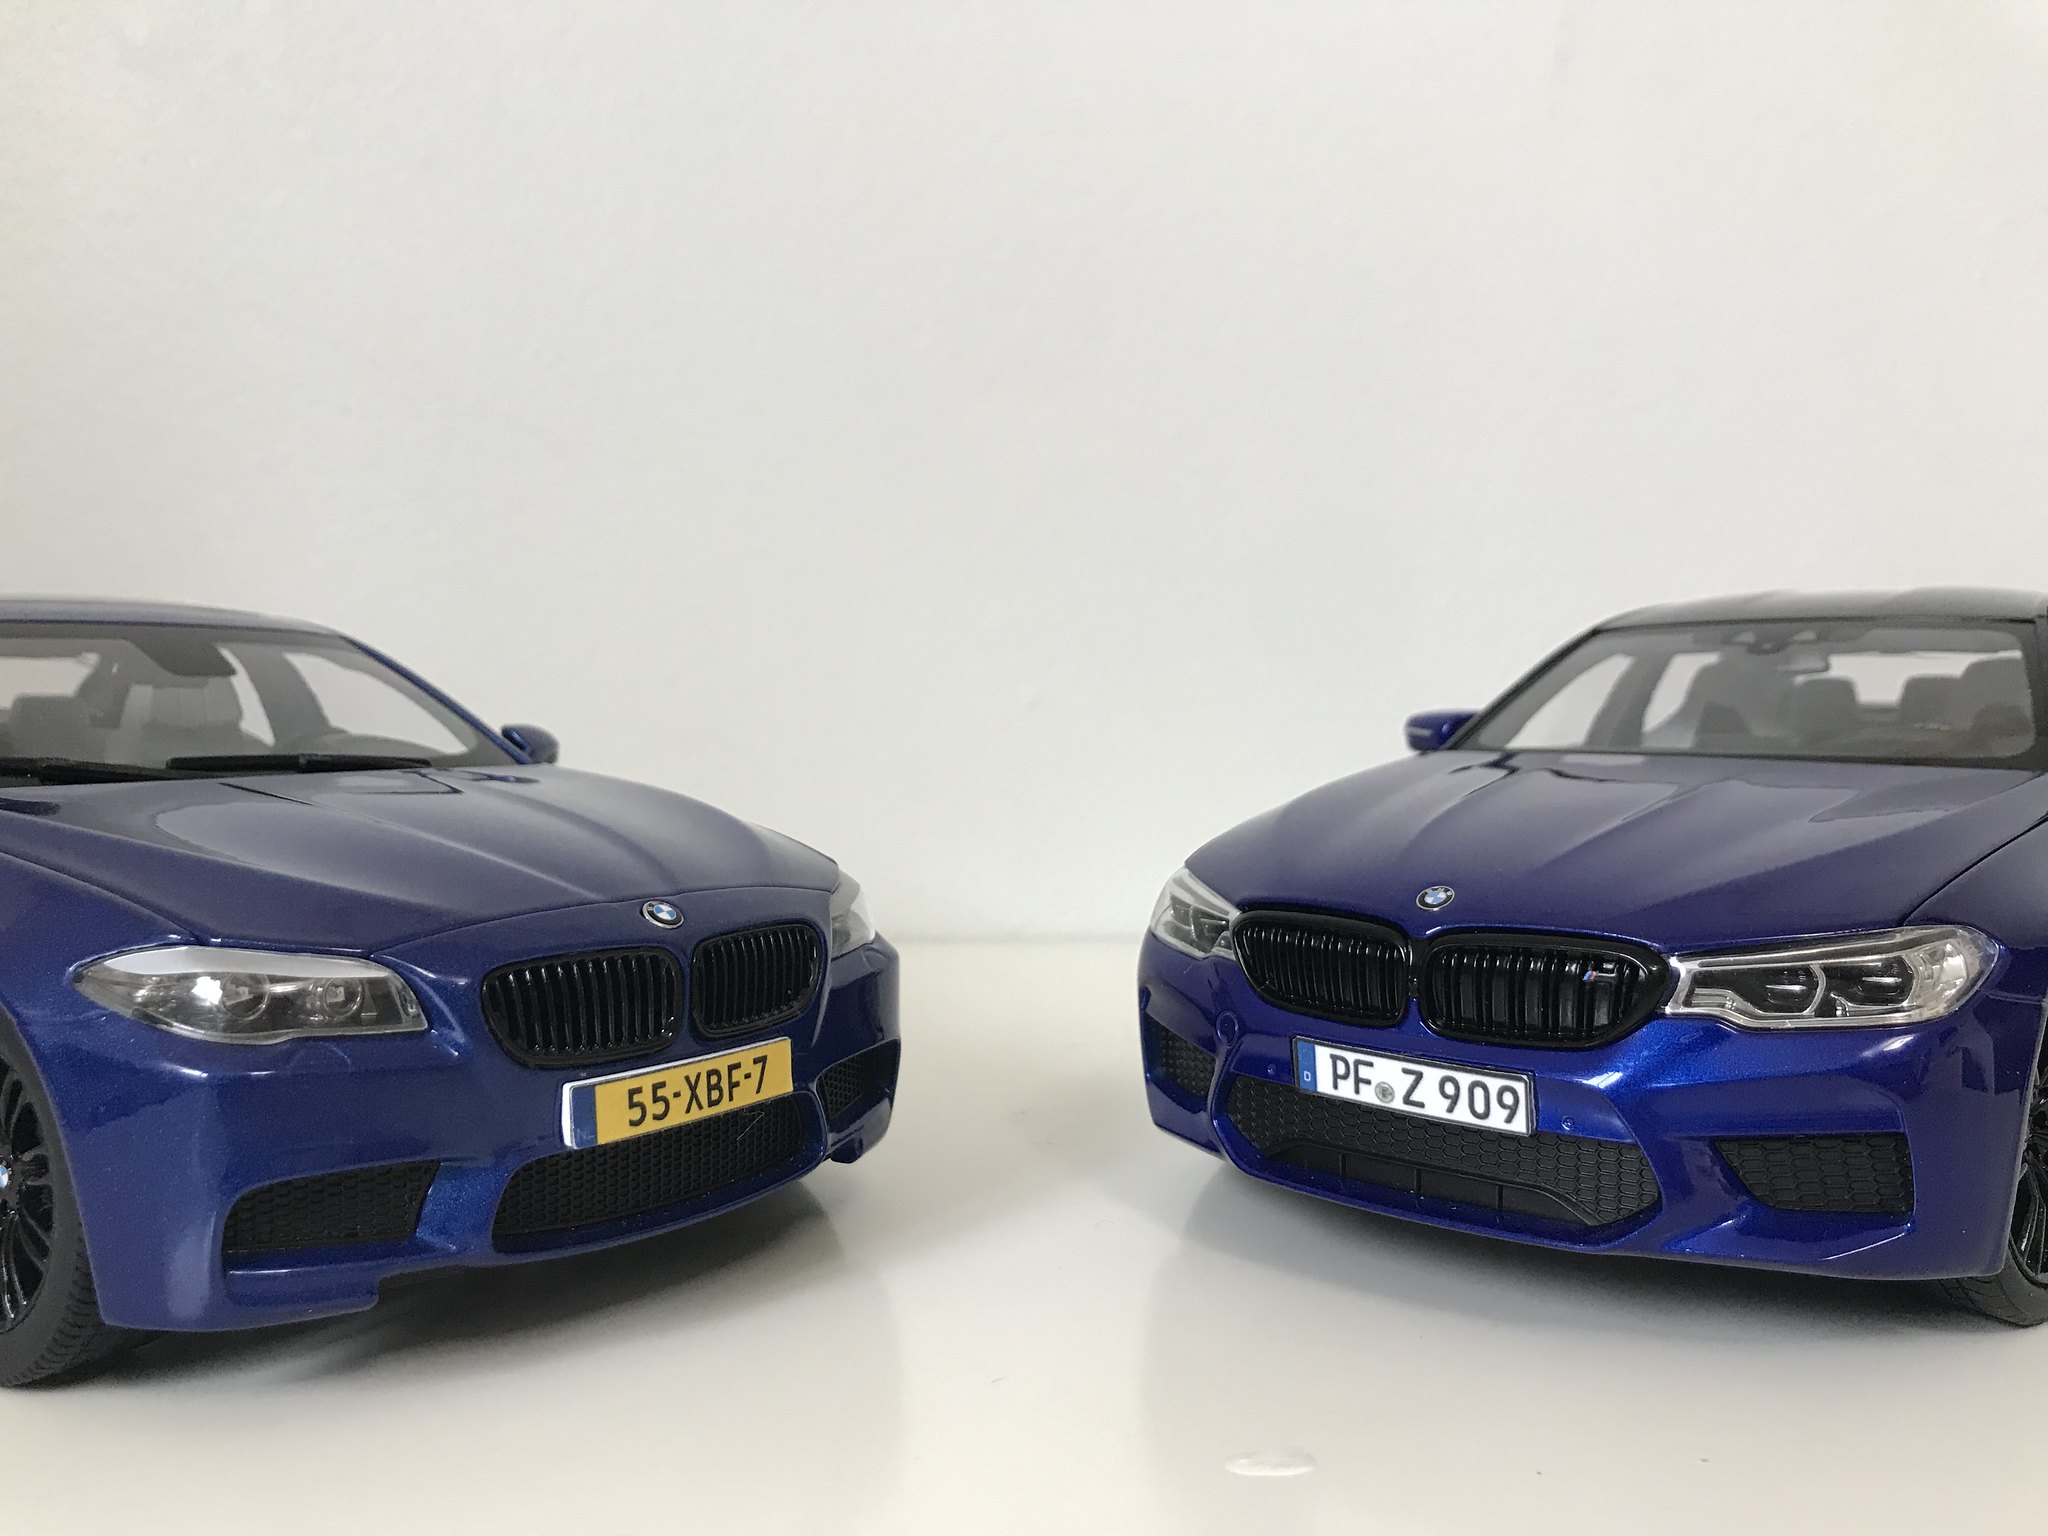 1:18 BMW M5 F90 Marina Bay Blue (by Norev) | DiecastXchange Forum